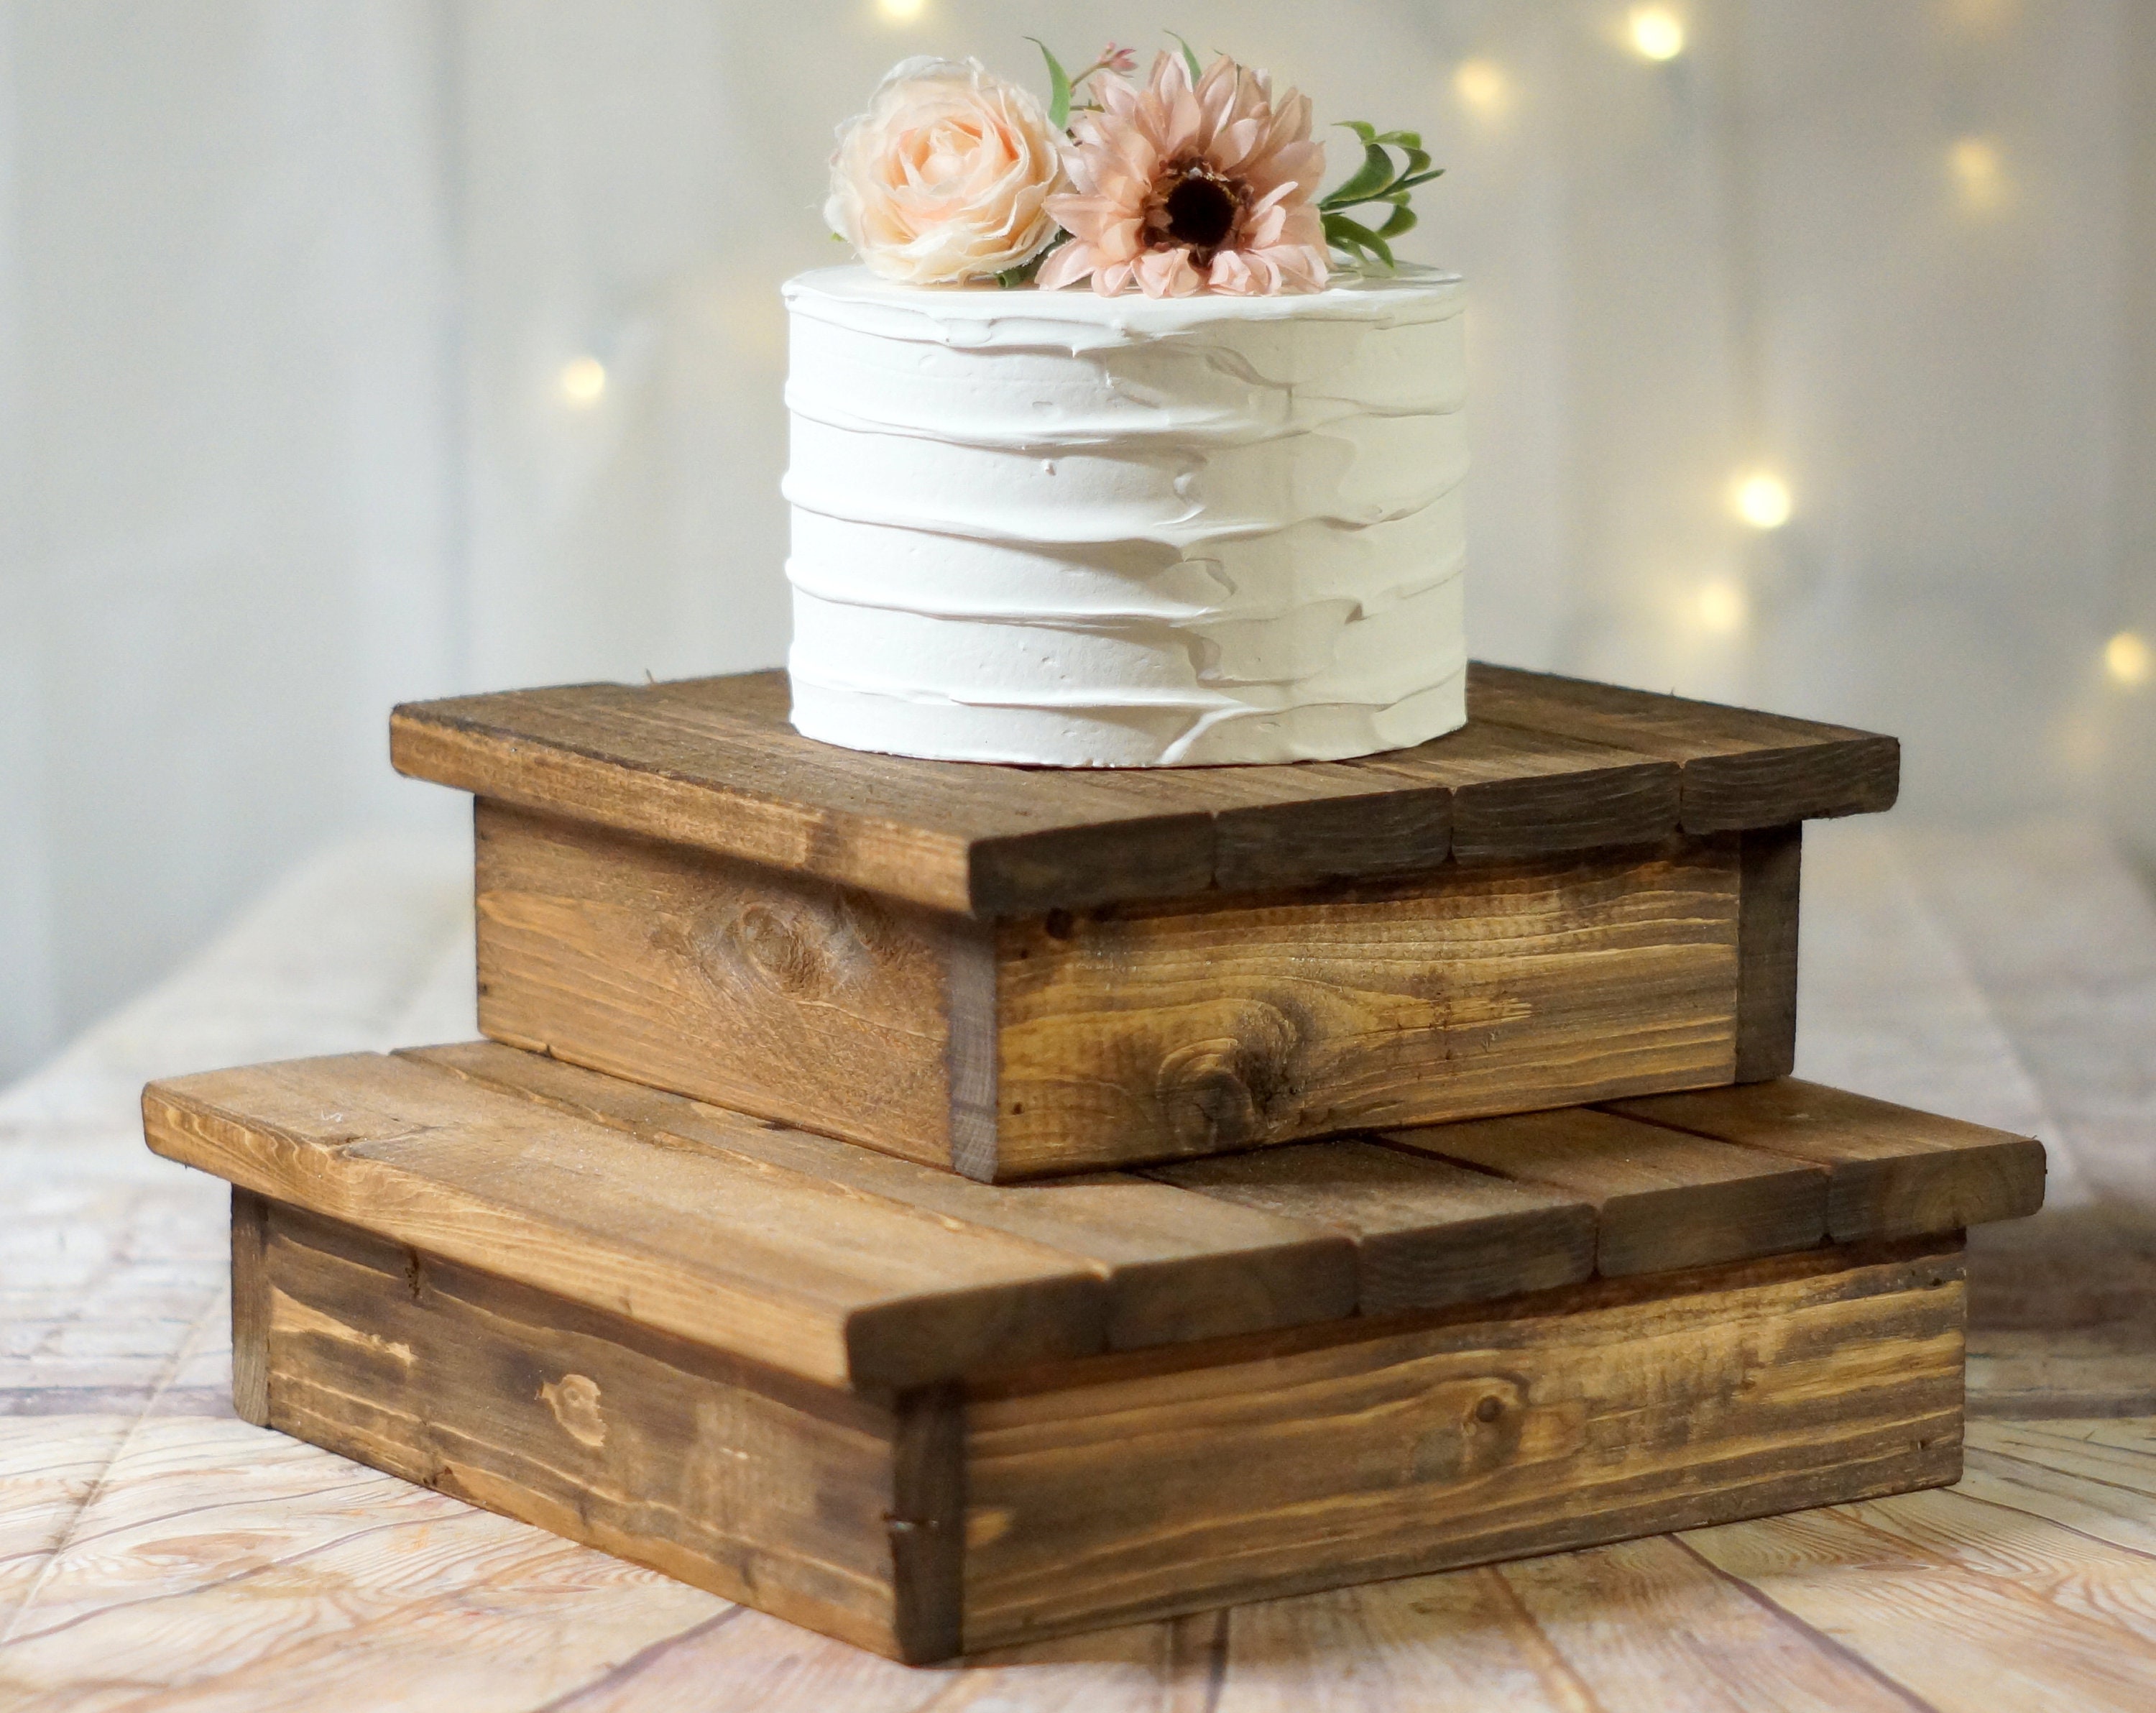 Lot de 3 supports rustiques en bois pour gâteaux de mariage